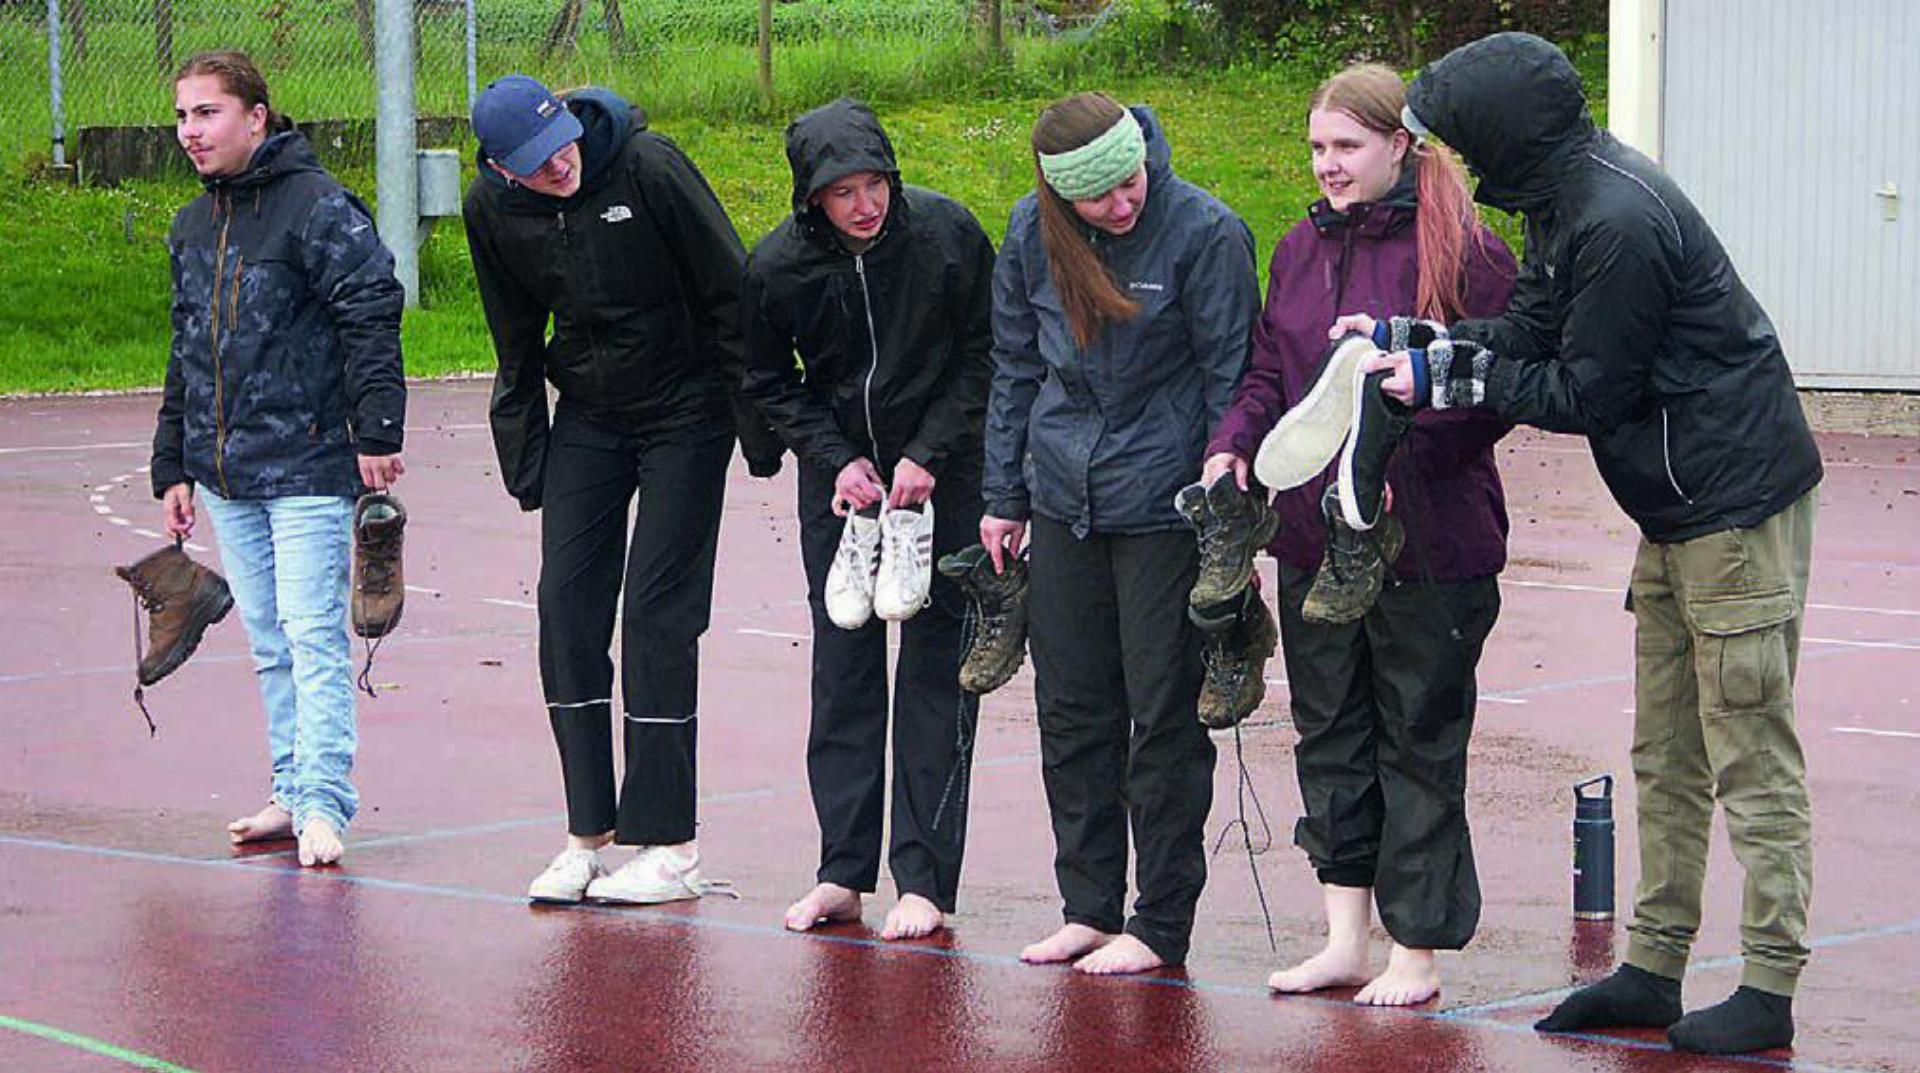 Das Wetter konnte der Jungwacht und dem Blauring nichts anhaben: Die Schuhe wurden trotz Regen ausgezogen.